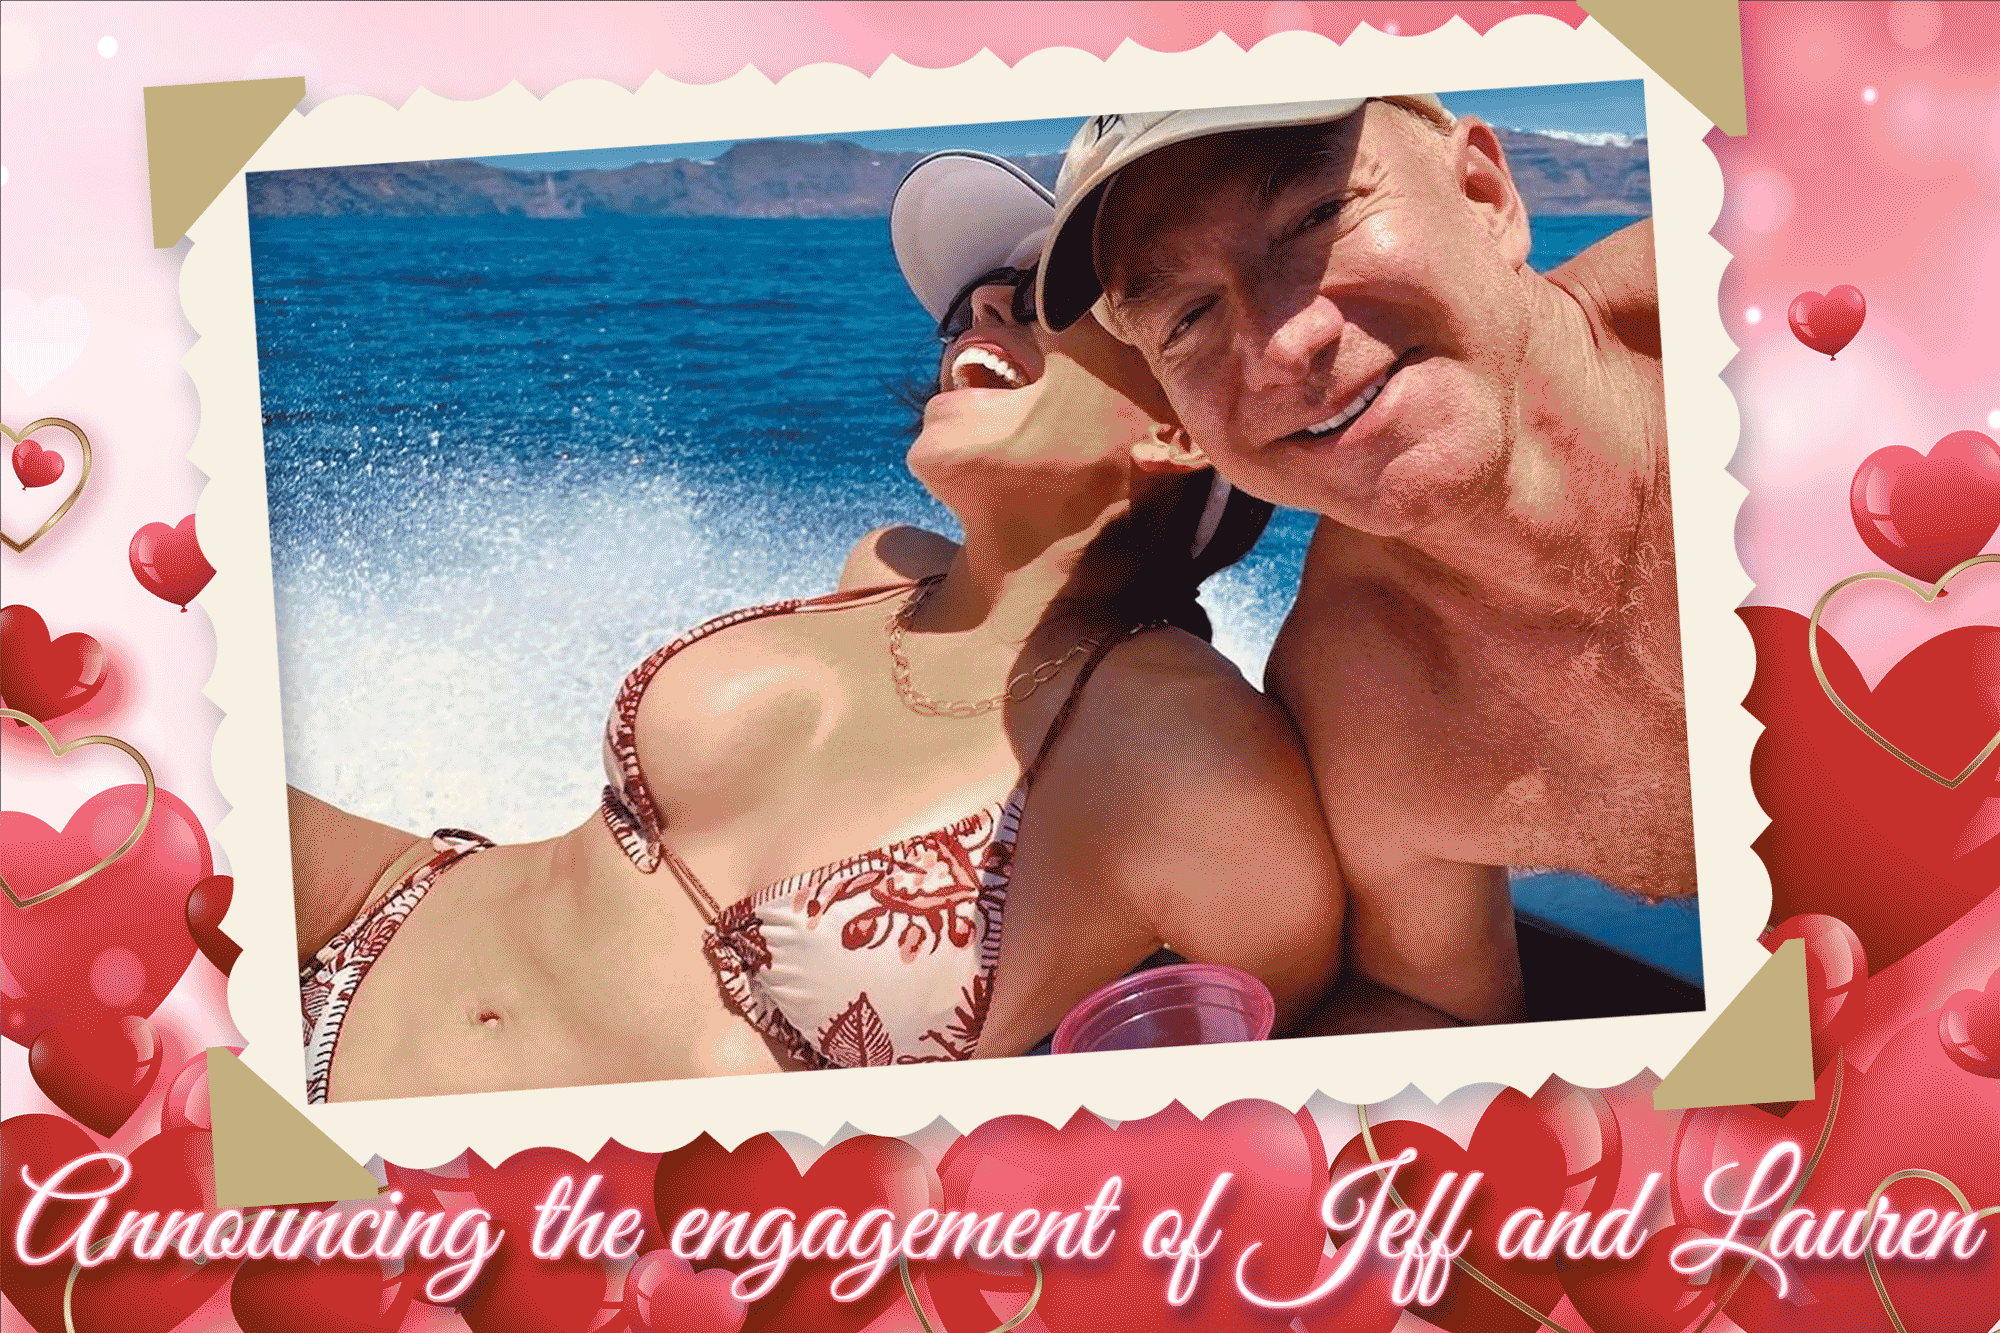 View - Tỷ phú Jeff Bezos và bạn gái "tình cảm như phim" trên siêu du thuyền | Báo Dân trí